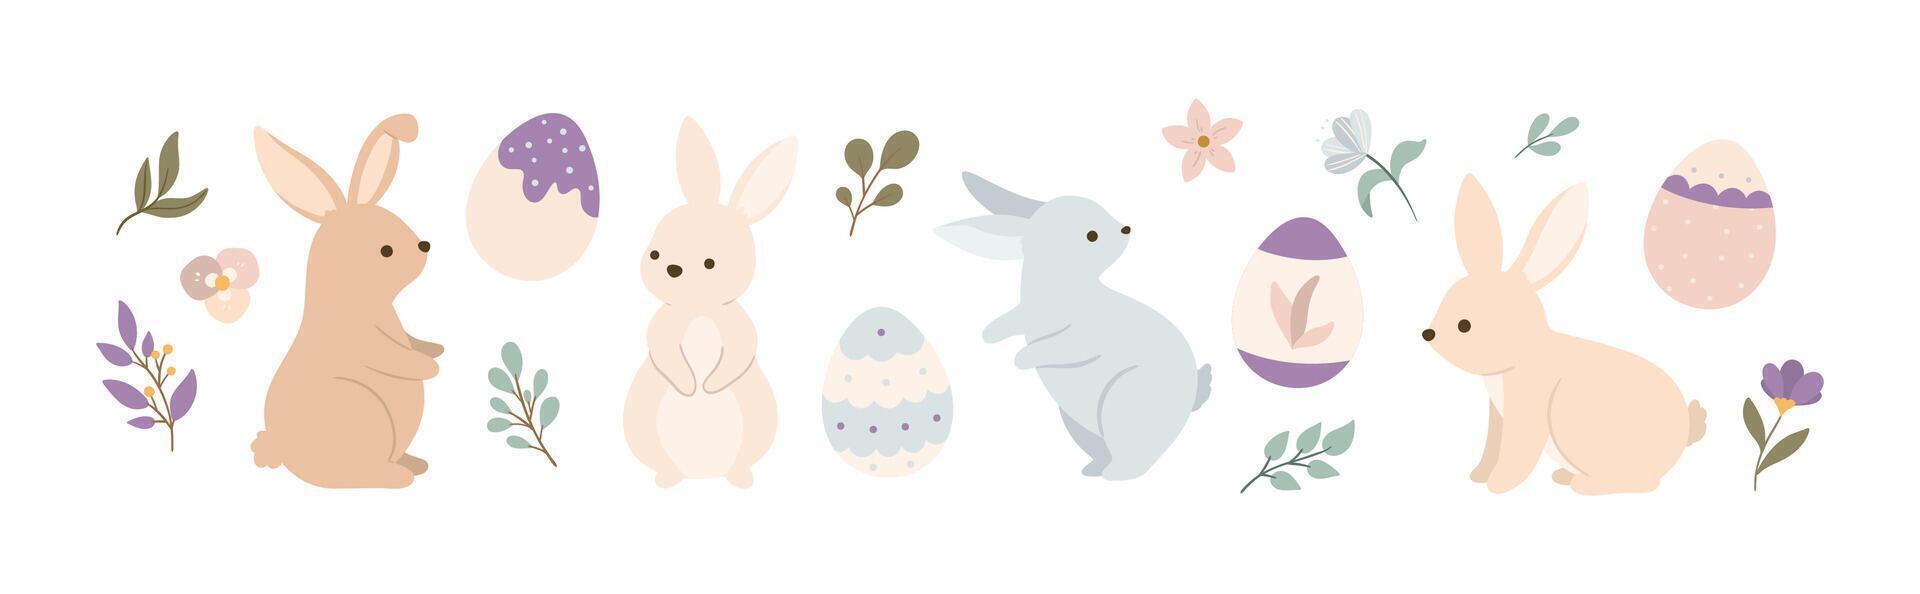 påsk kaniner i annorlunda poser med ägg och blommor vektor